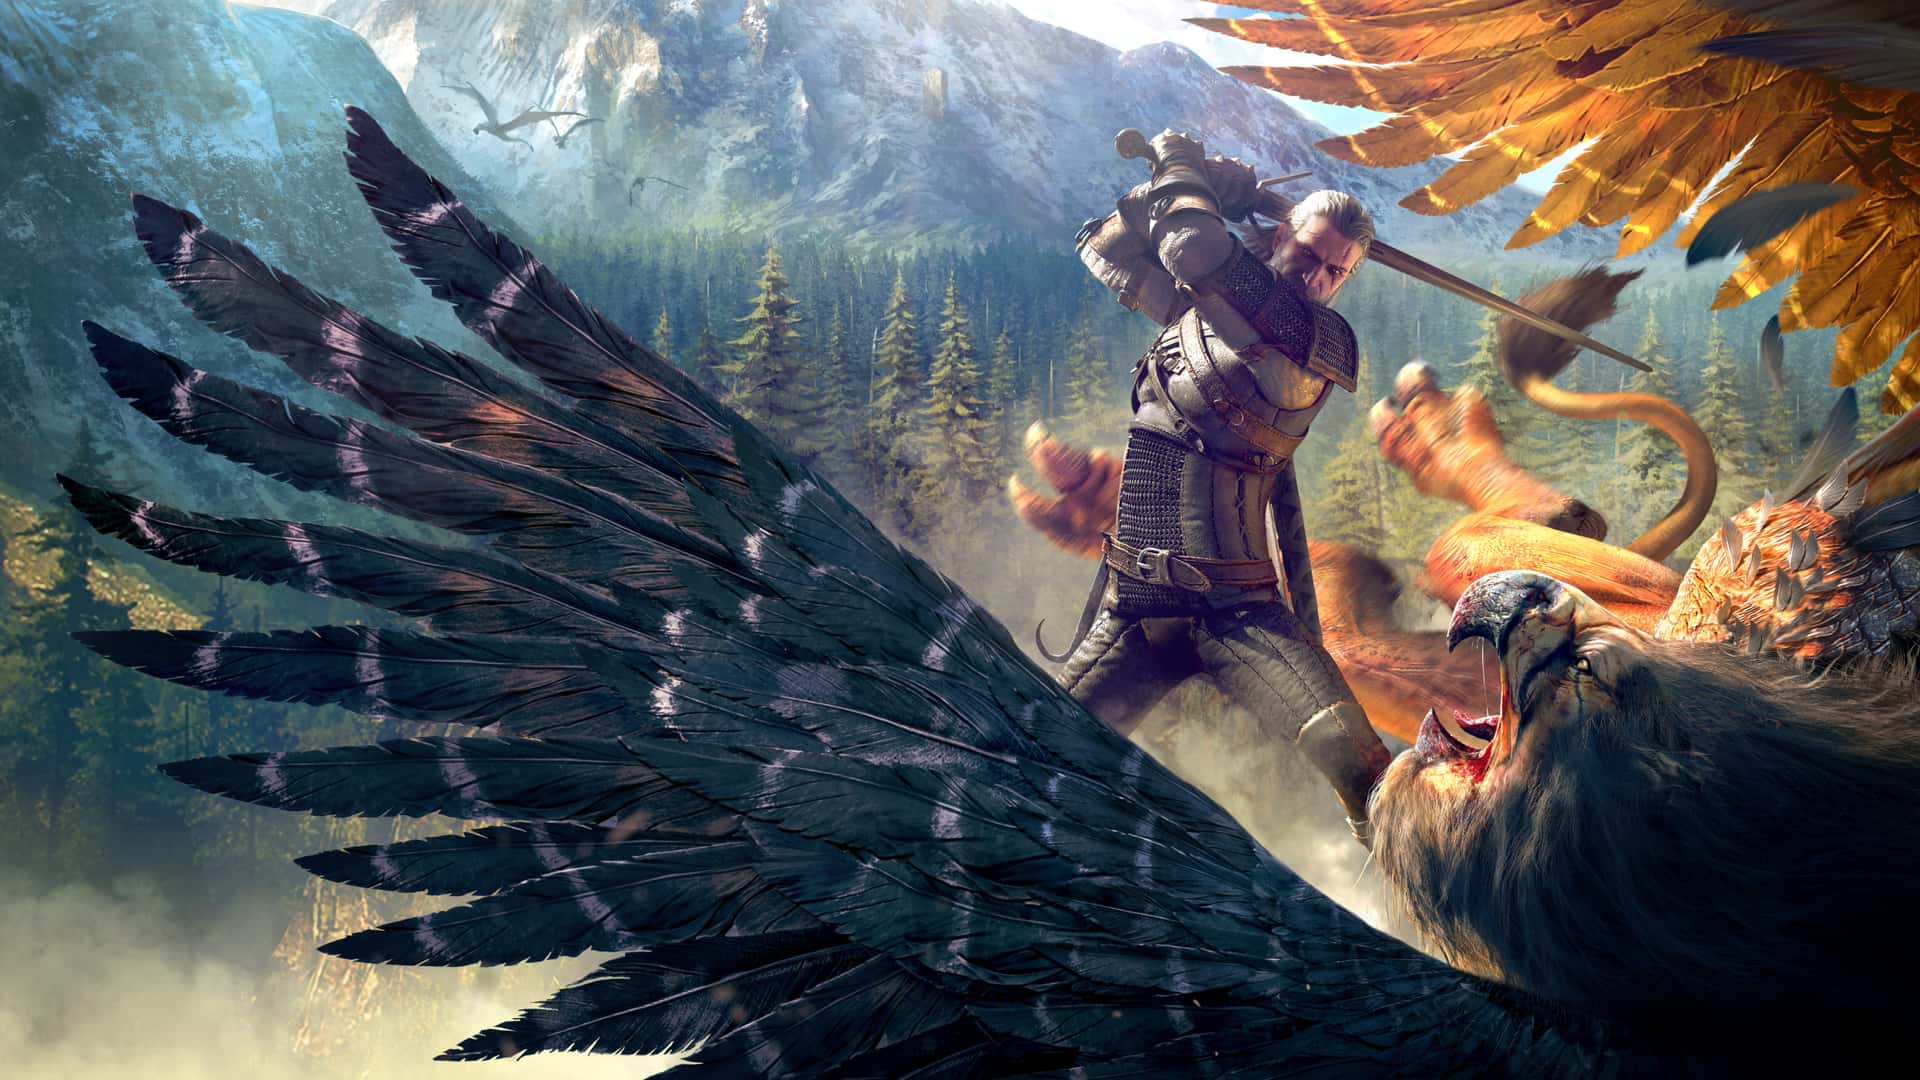 Artwork del juego The Witcher 3: Wild Hunt que es uno d elos mejores juegos de modo historia de pc